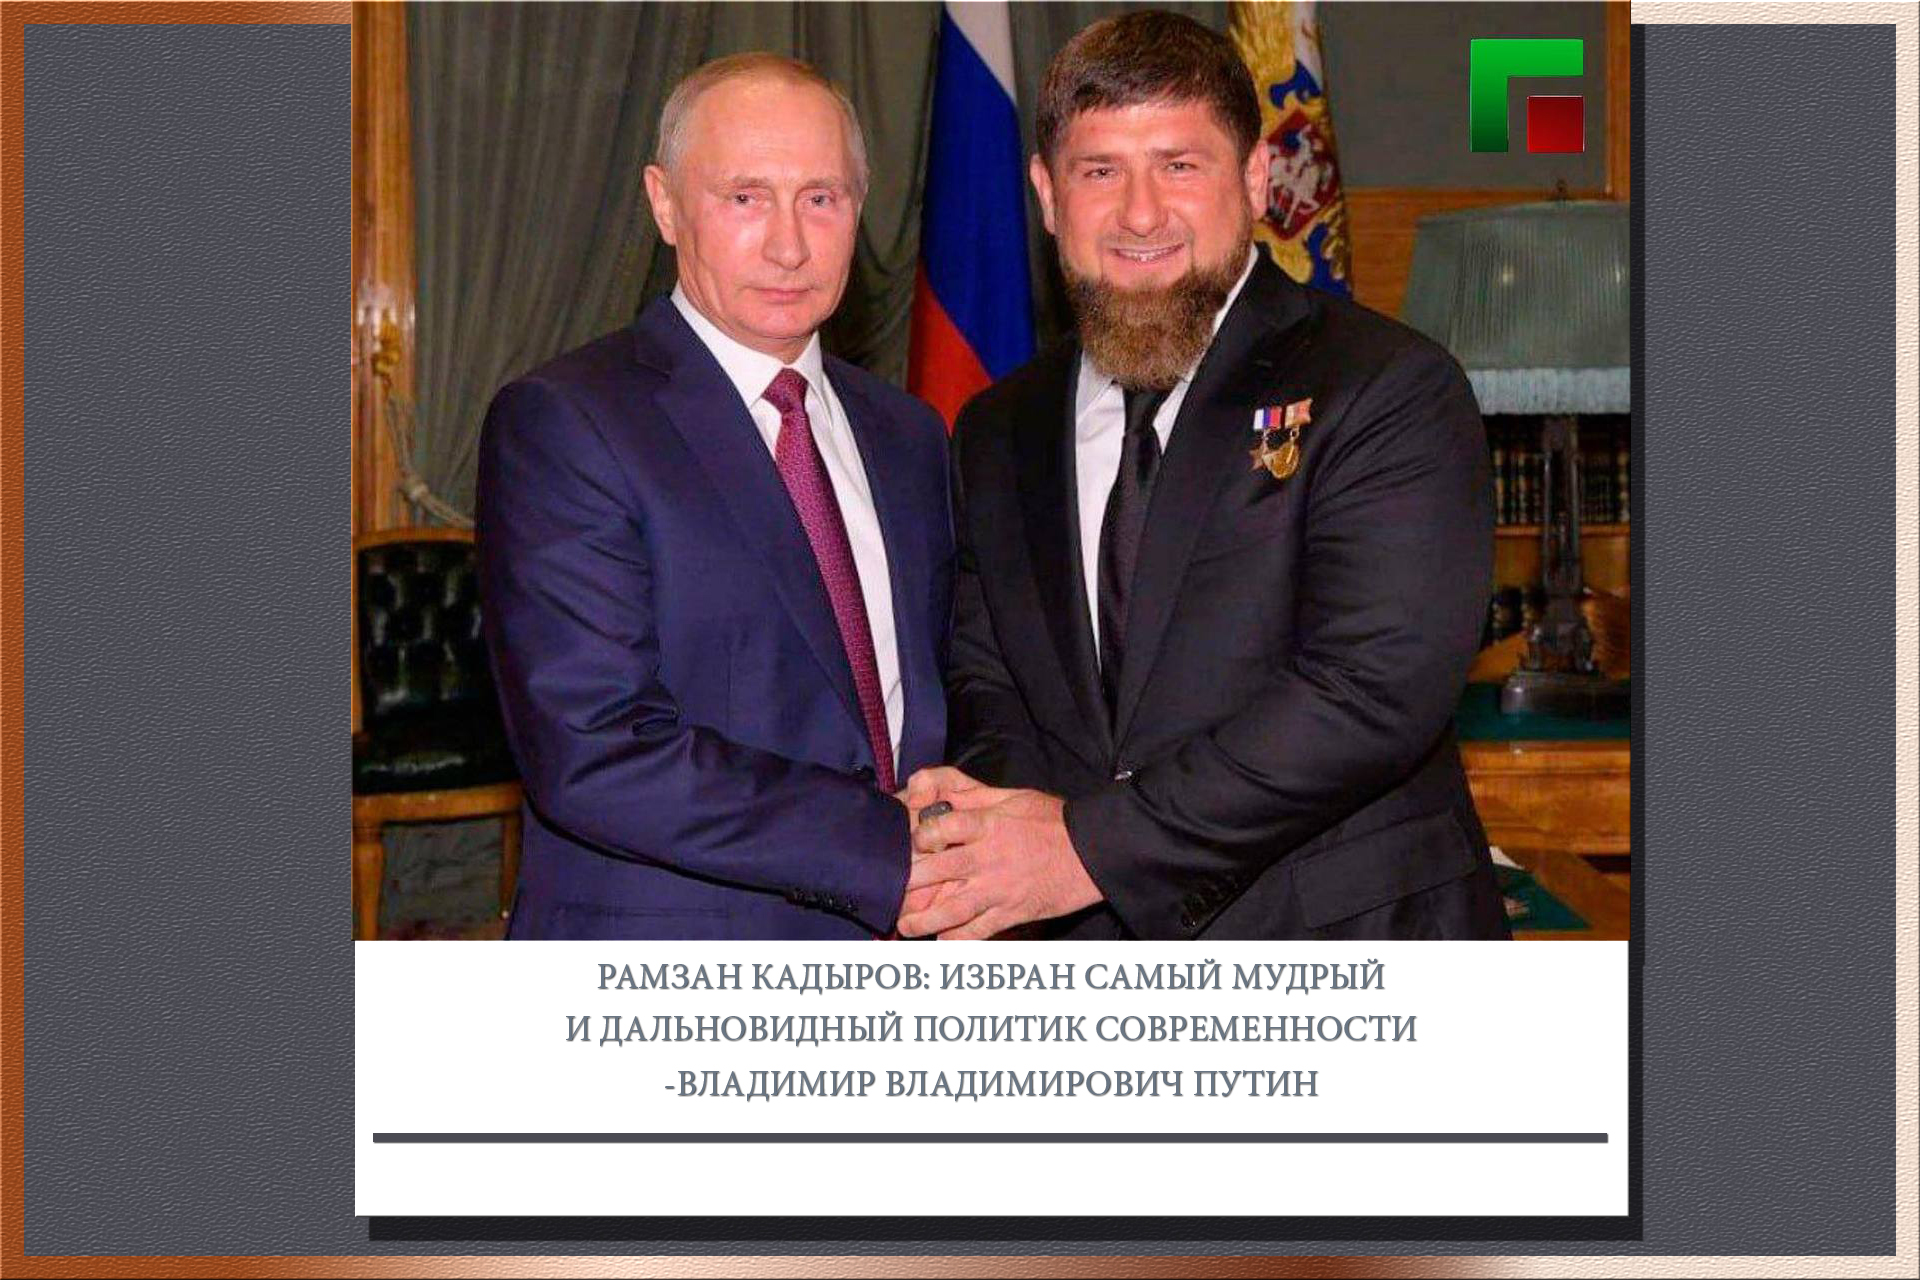 Глава ЧР Рамзан Кадыров поздравил Владимира Путина с победой на выборах Президента Российской Федерации. Соответствующий текст он опубликовал в своем телеграм-канале